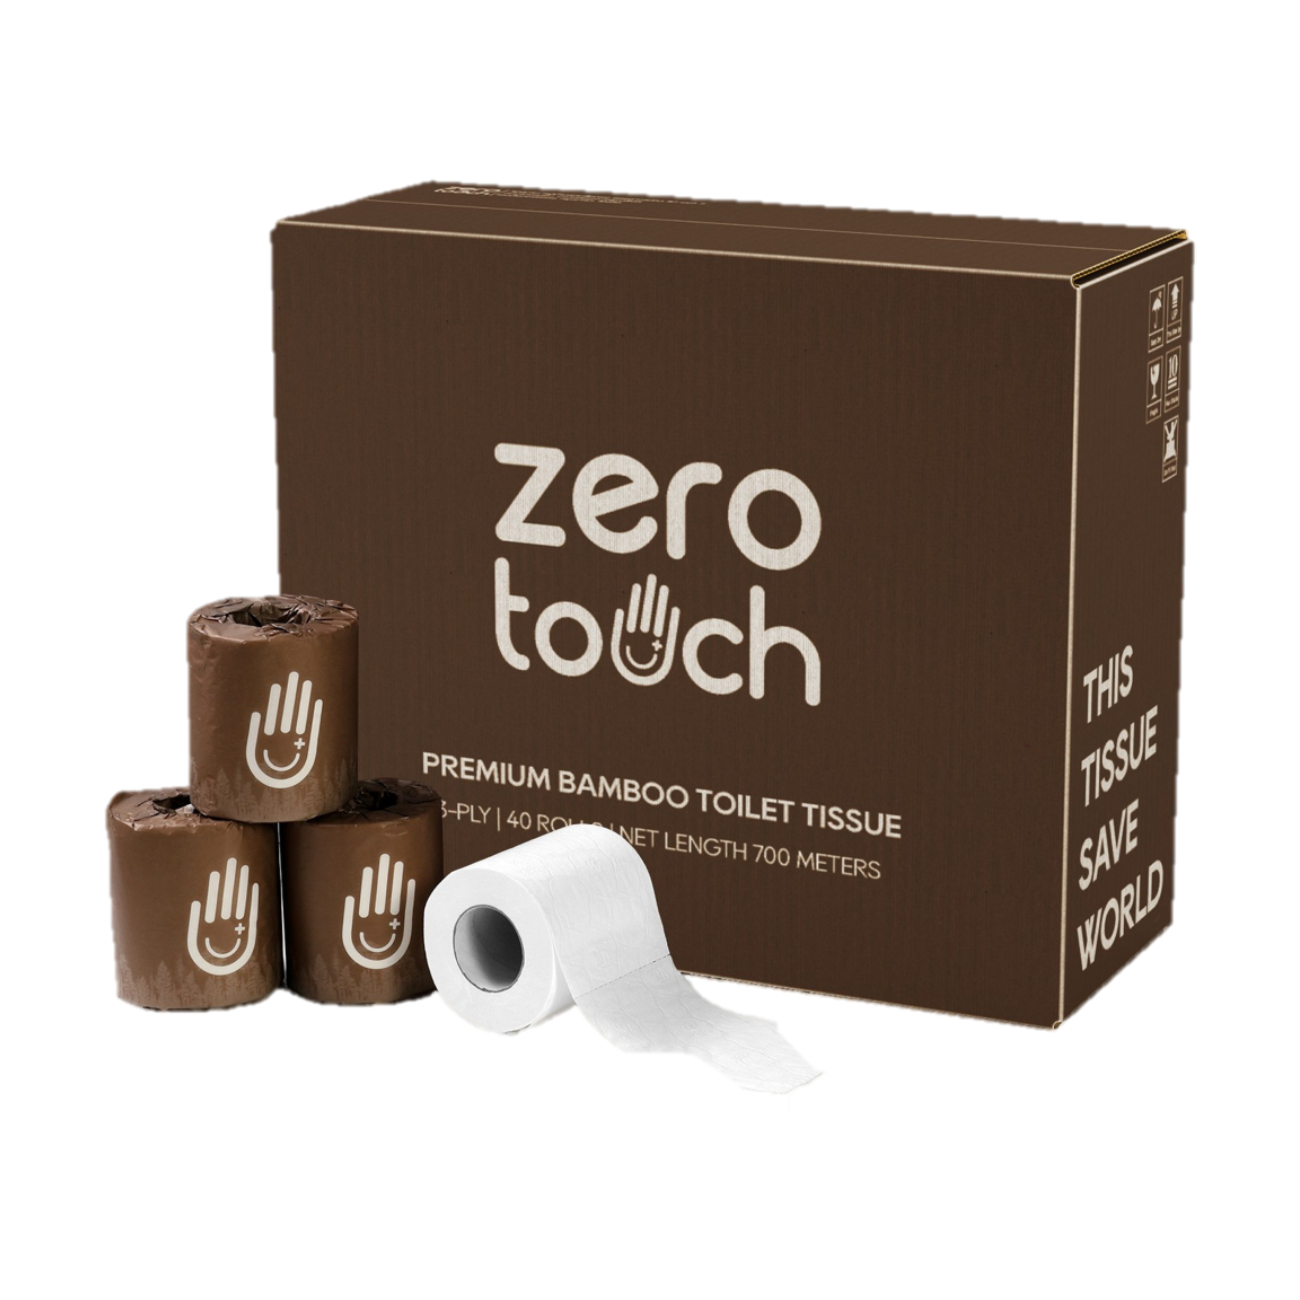 ZERO-TOUCH ทิชชู่เยื่อไผ่จากธรรมชาติ 100% แบบม้วนเล็ก